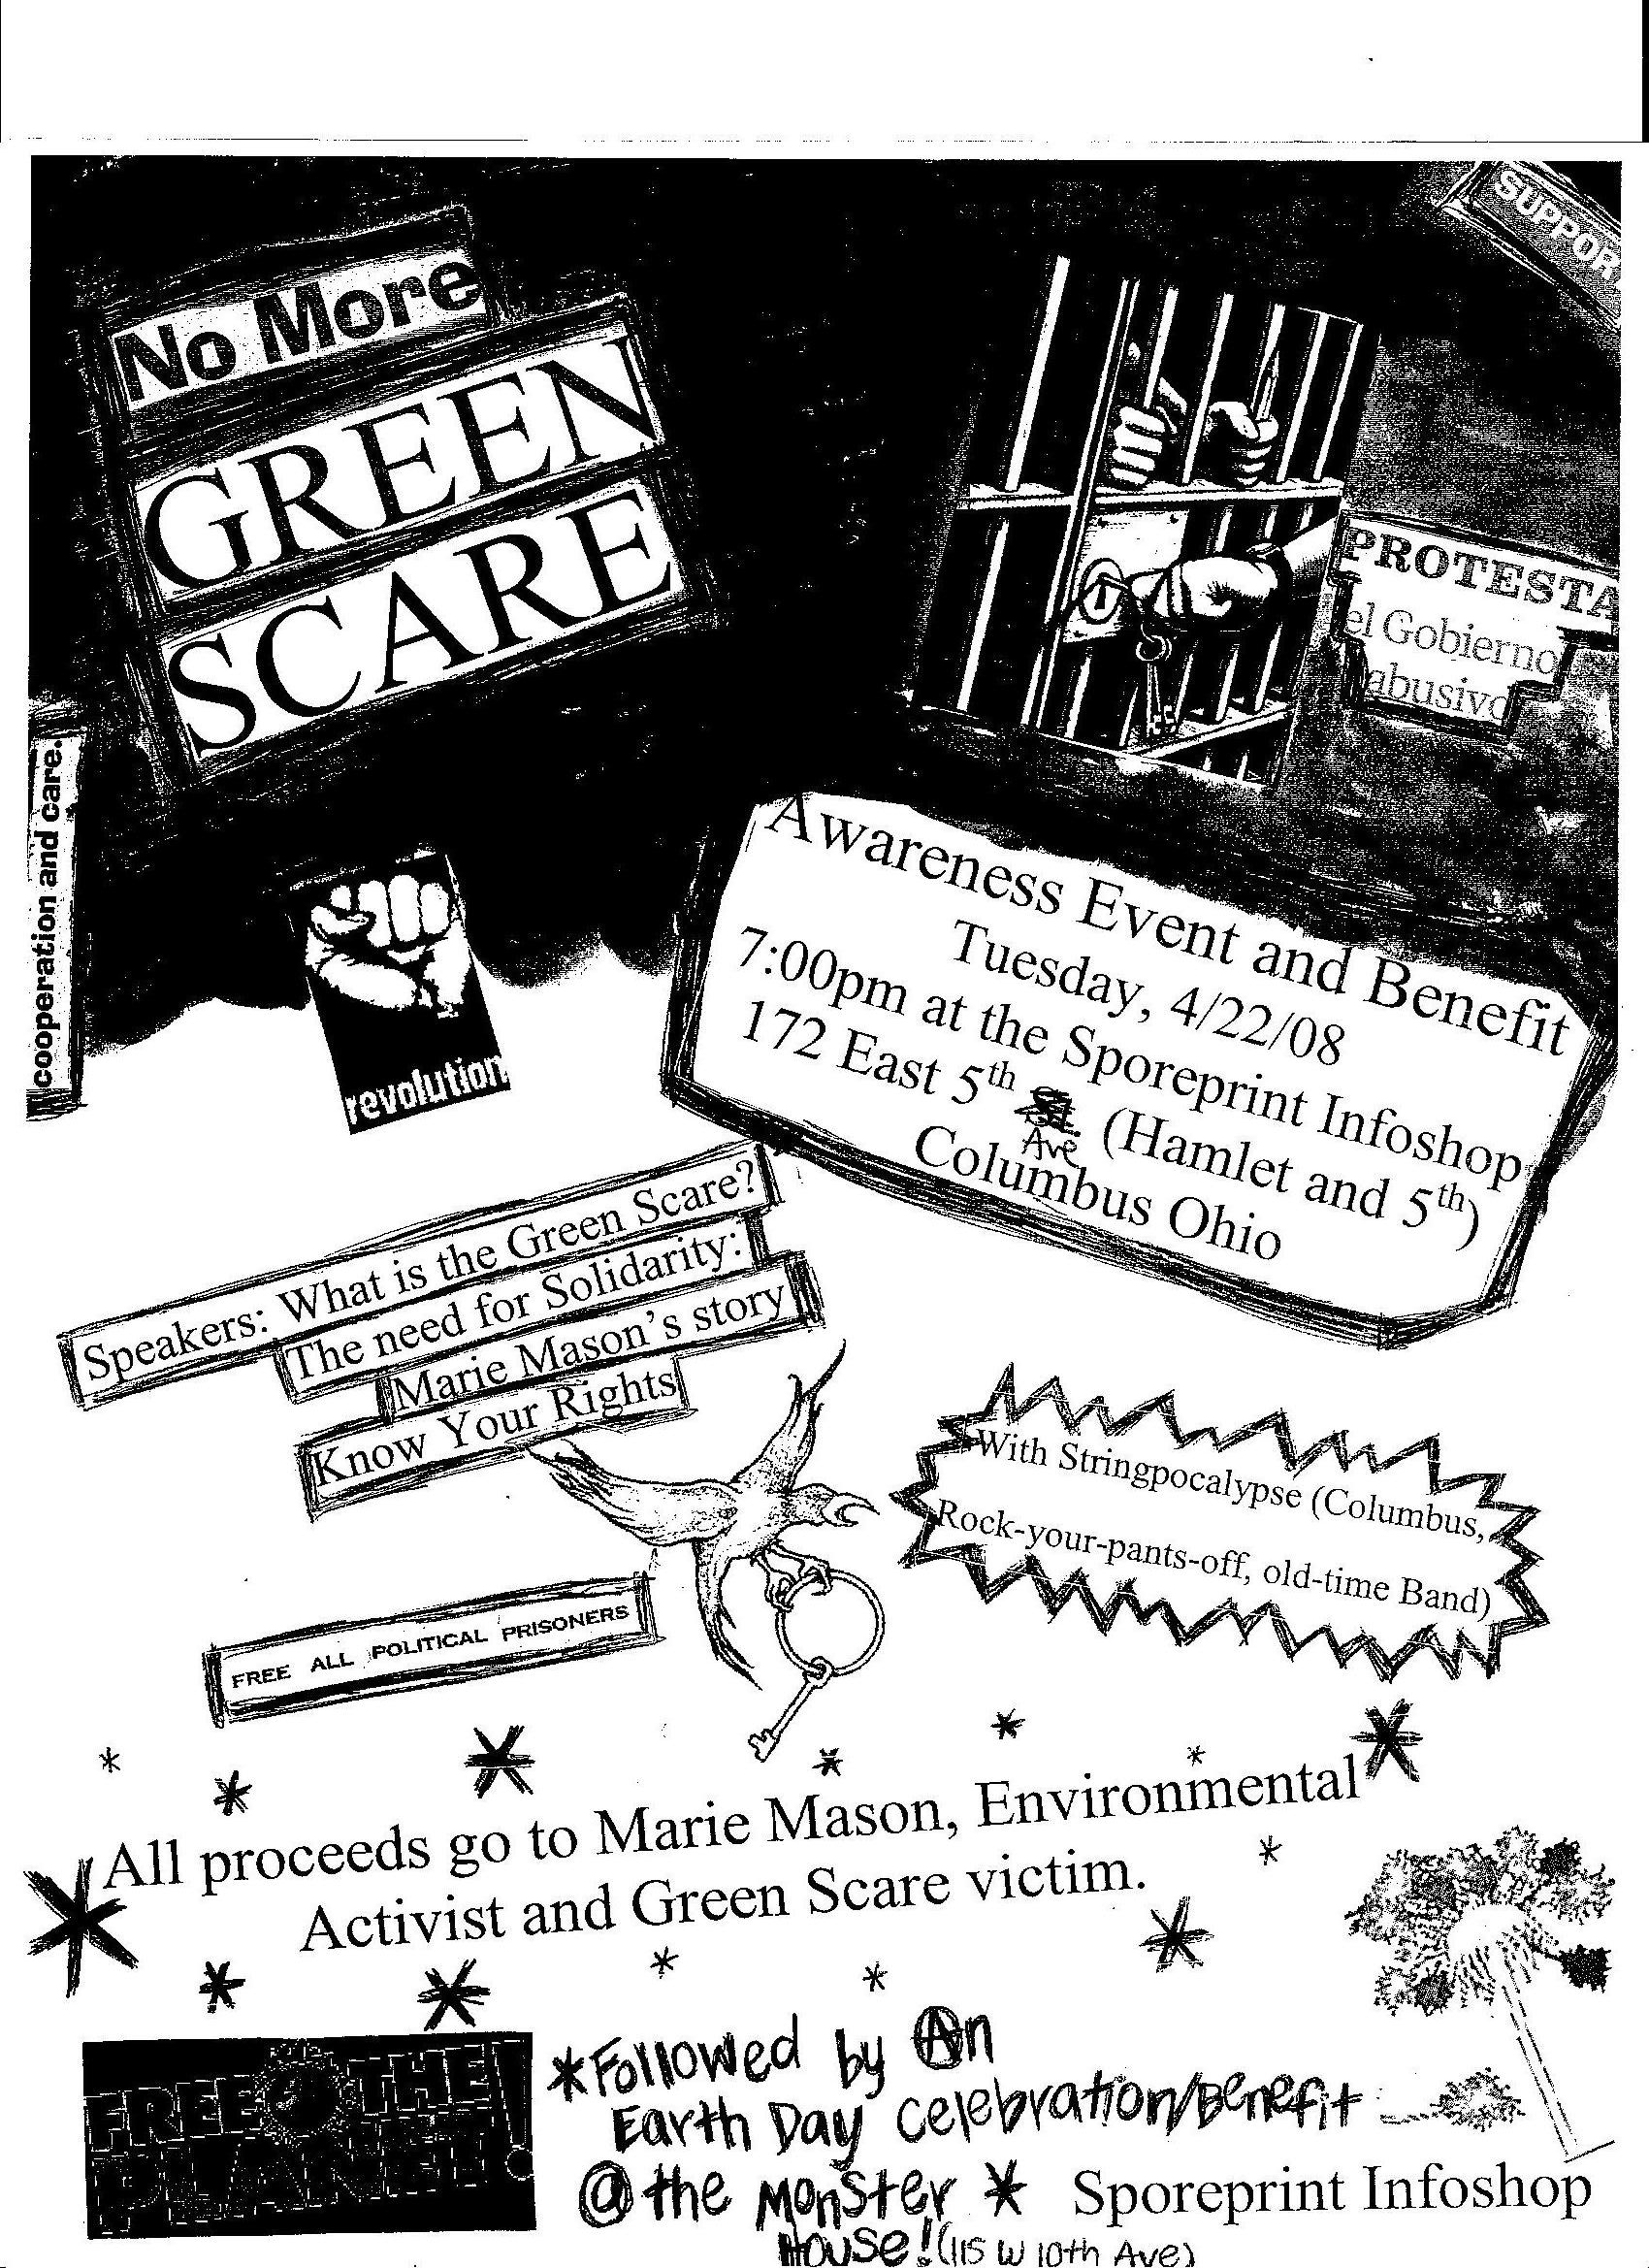 Ohio Green Scare Event Eco-Terrorism Marie Mason